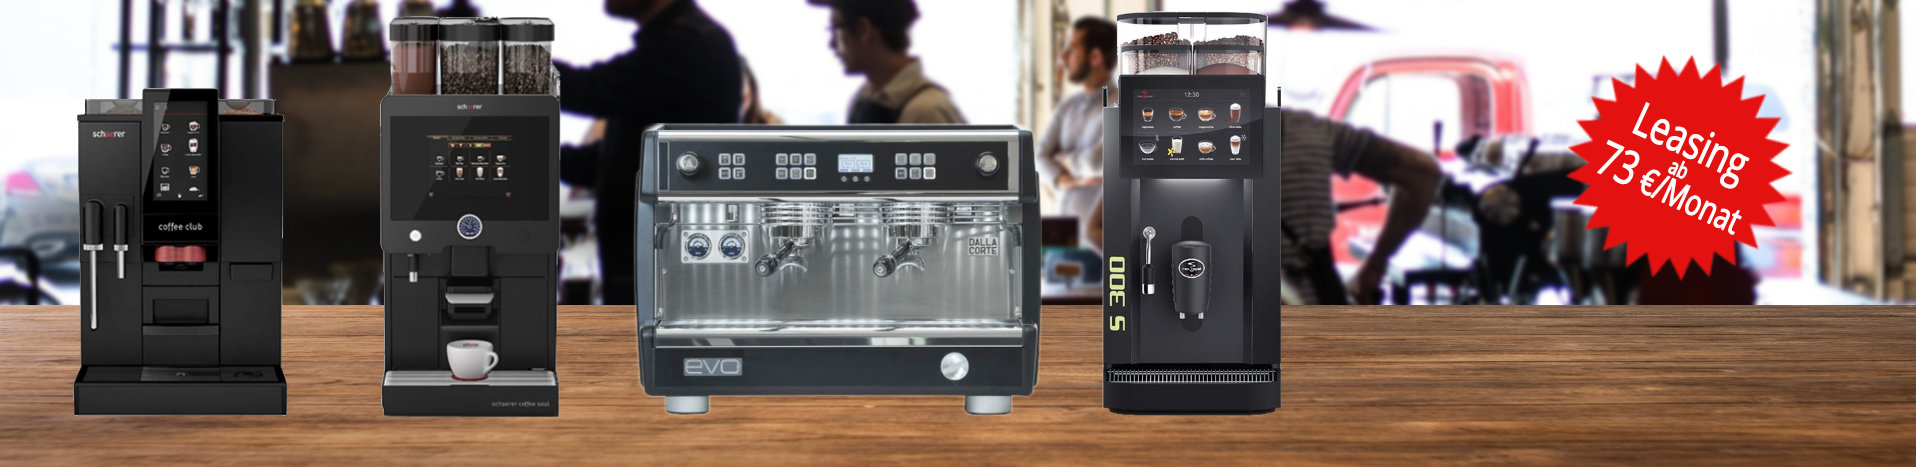 Kaffeevollautomaten und Siebträger für Gastronomie und Gewerbe